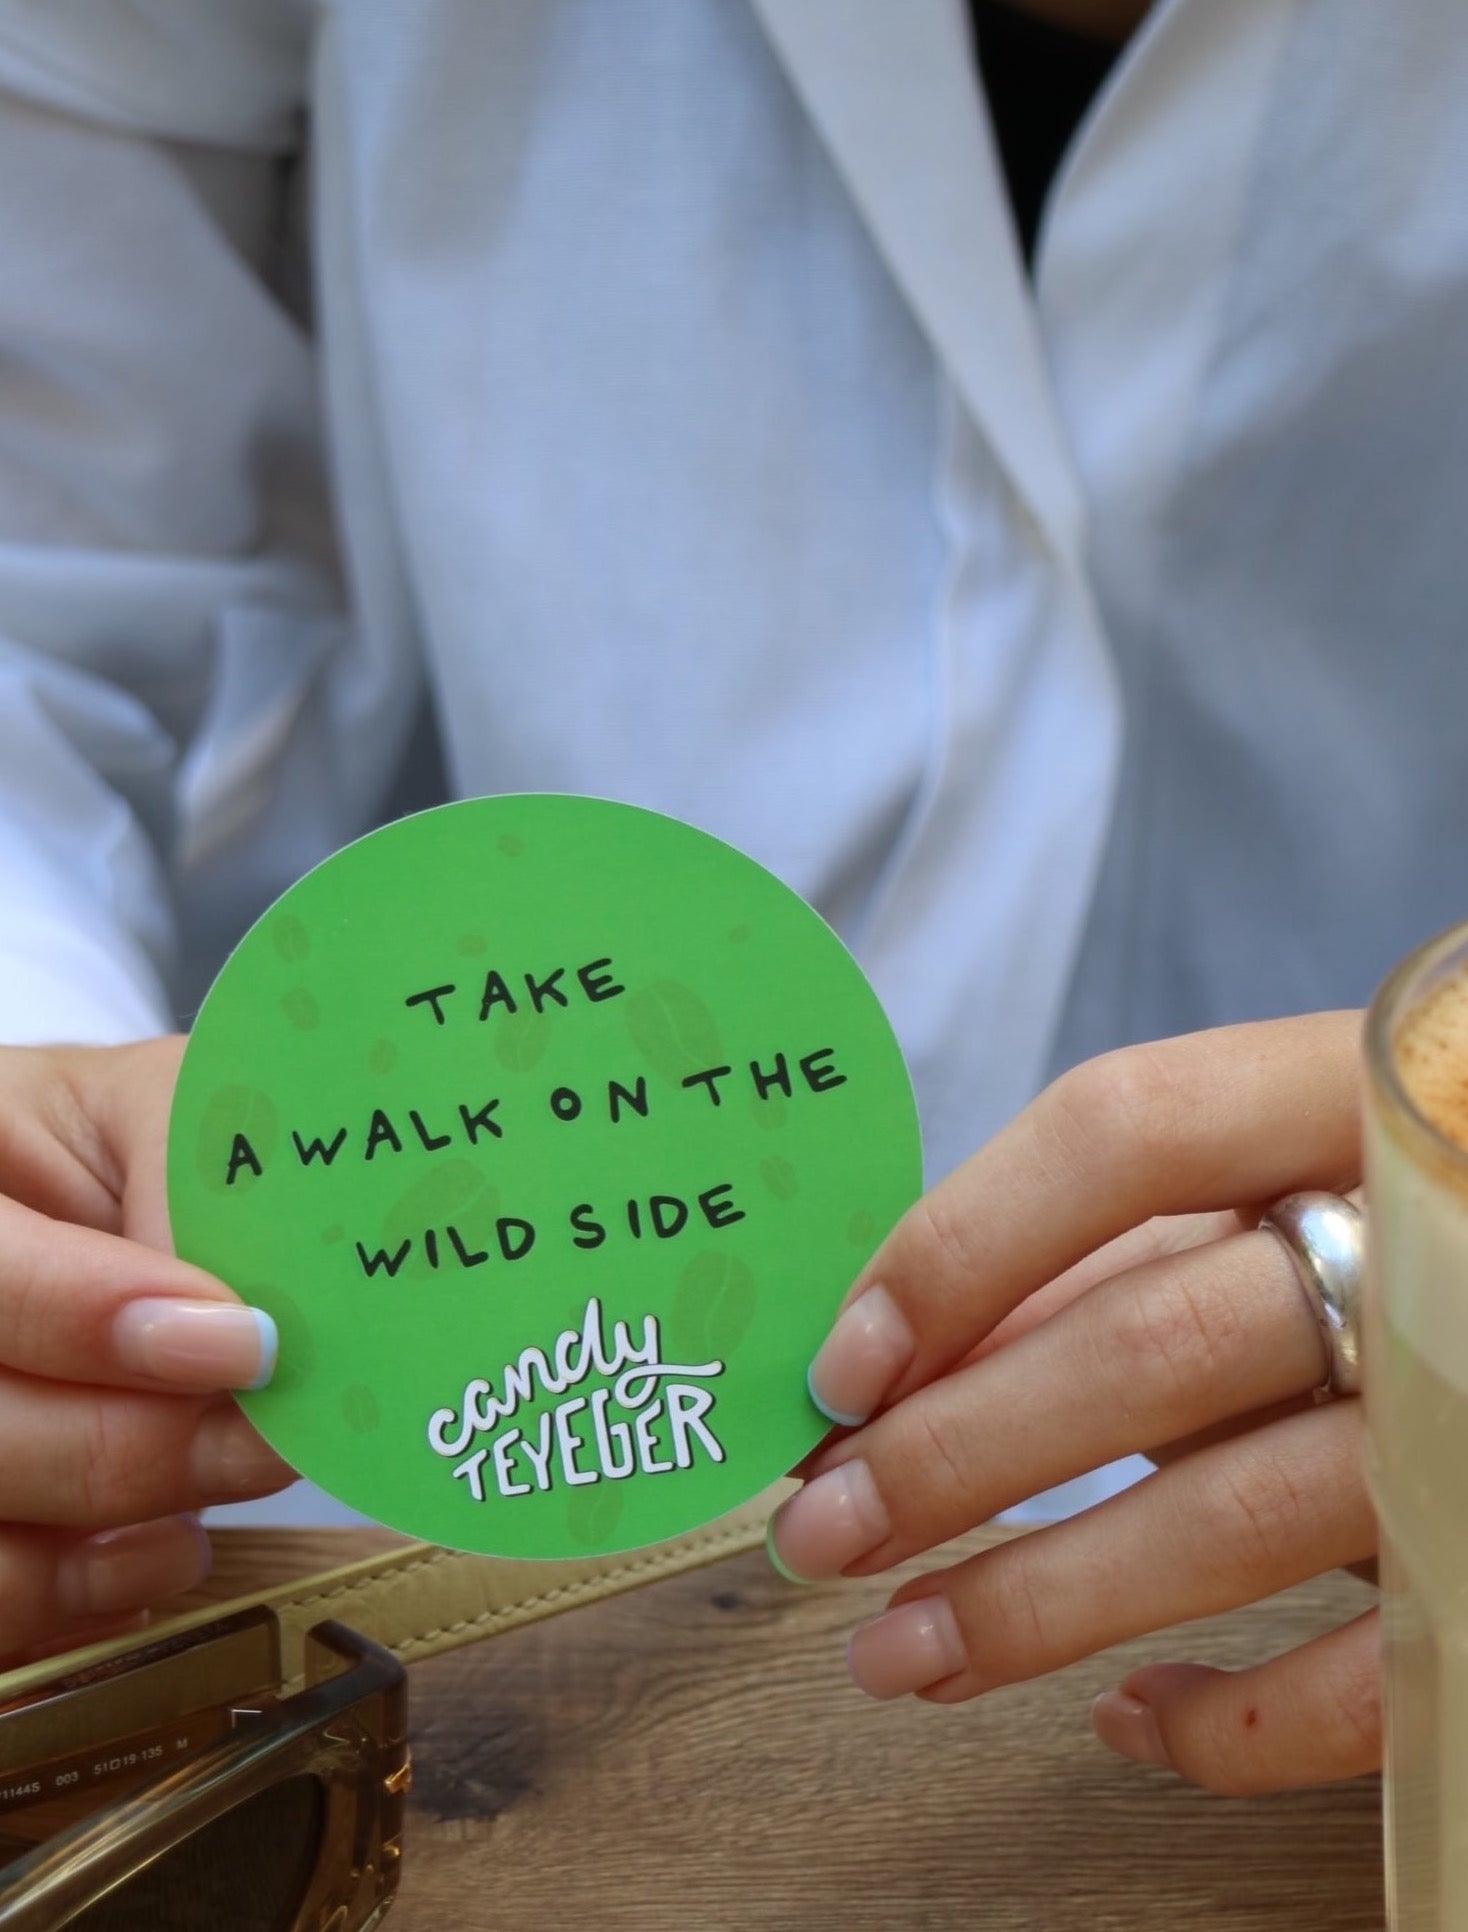 rundes, grünes Sticker mit der Aufschrift "Take a walk on the wild side" und dem Logo von Candy Teyeger